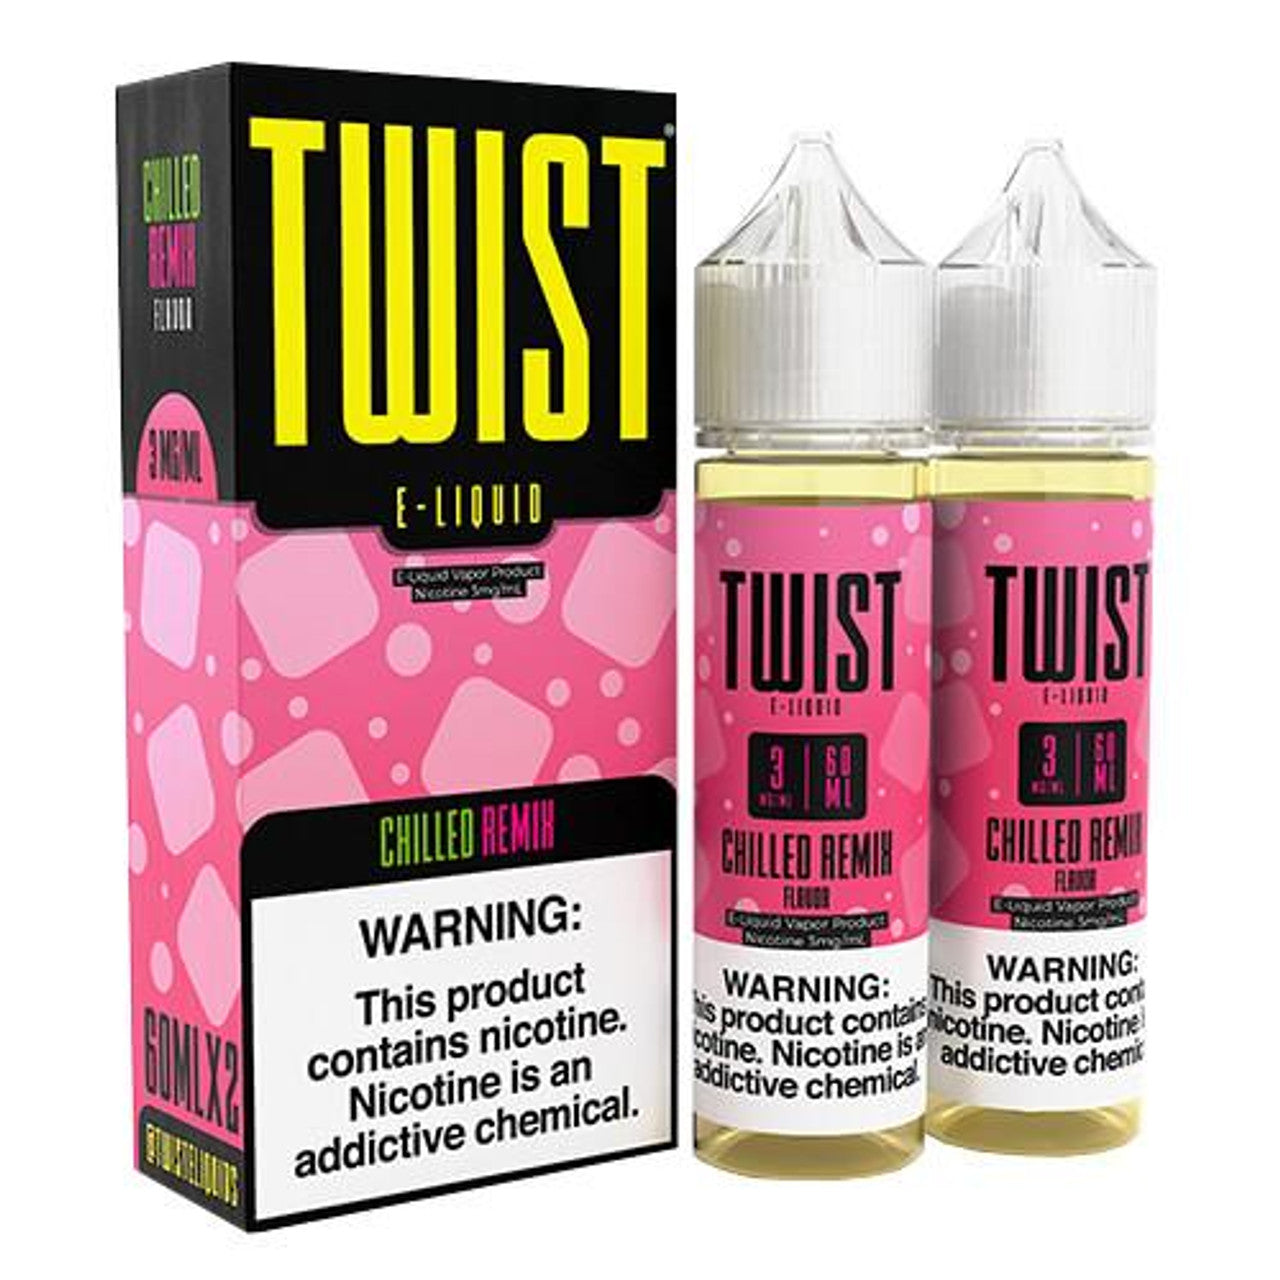 TWIST Premium E-Liquid 60ml 2pk